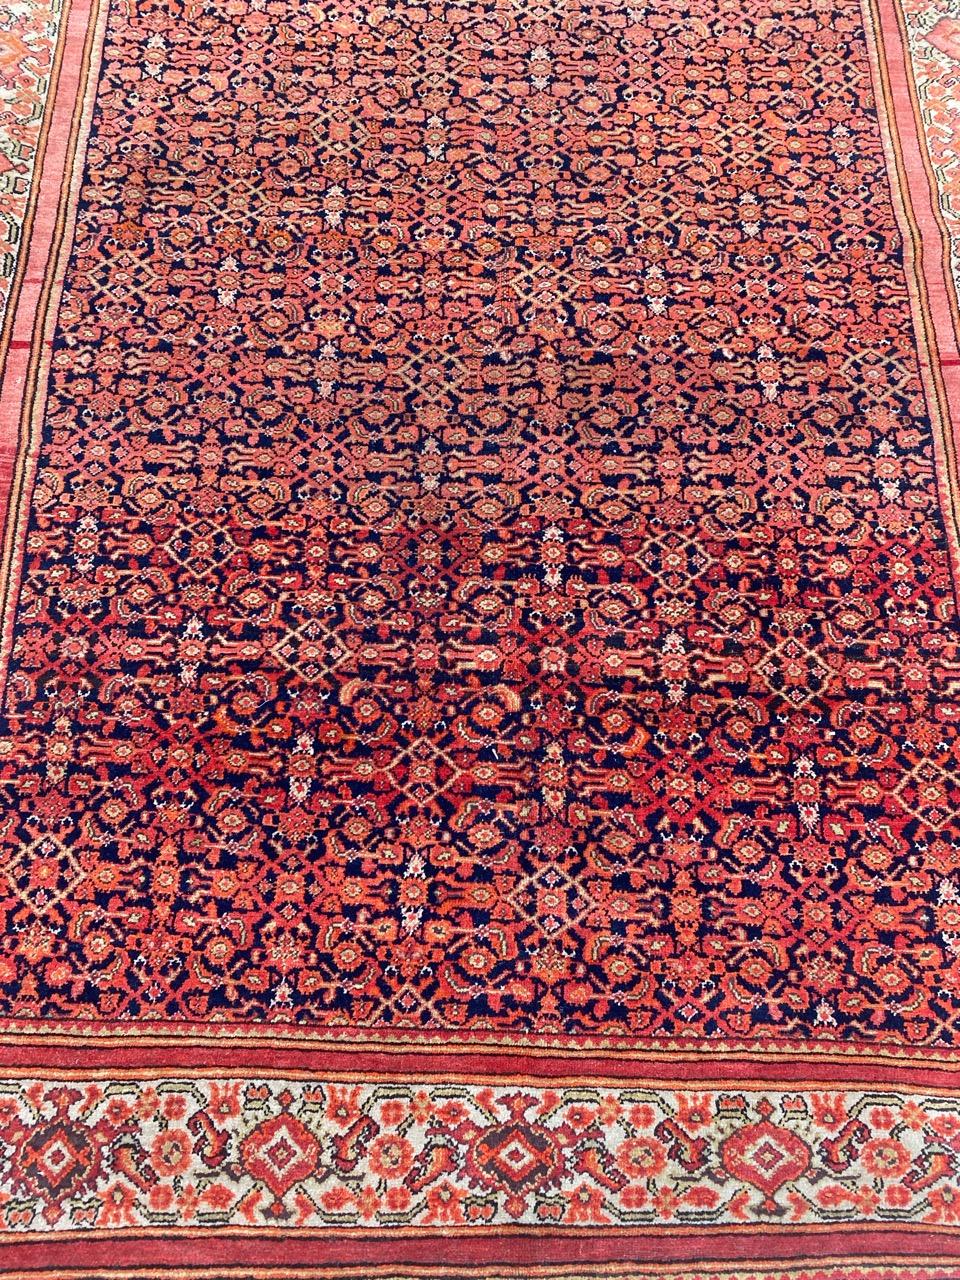 Sehr schöner Malayer-Teppich aus dem späten 19. Jahrhundert mit schönem Herati-Muster und schönen natürlichen Farben, vollständig und fein handgeknüpft mit Wollsamt auf Baumwollgrund.

✨✨✨
